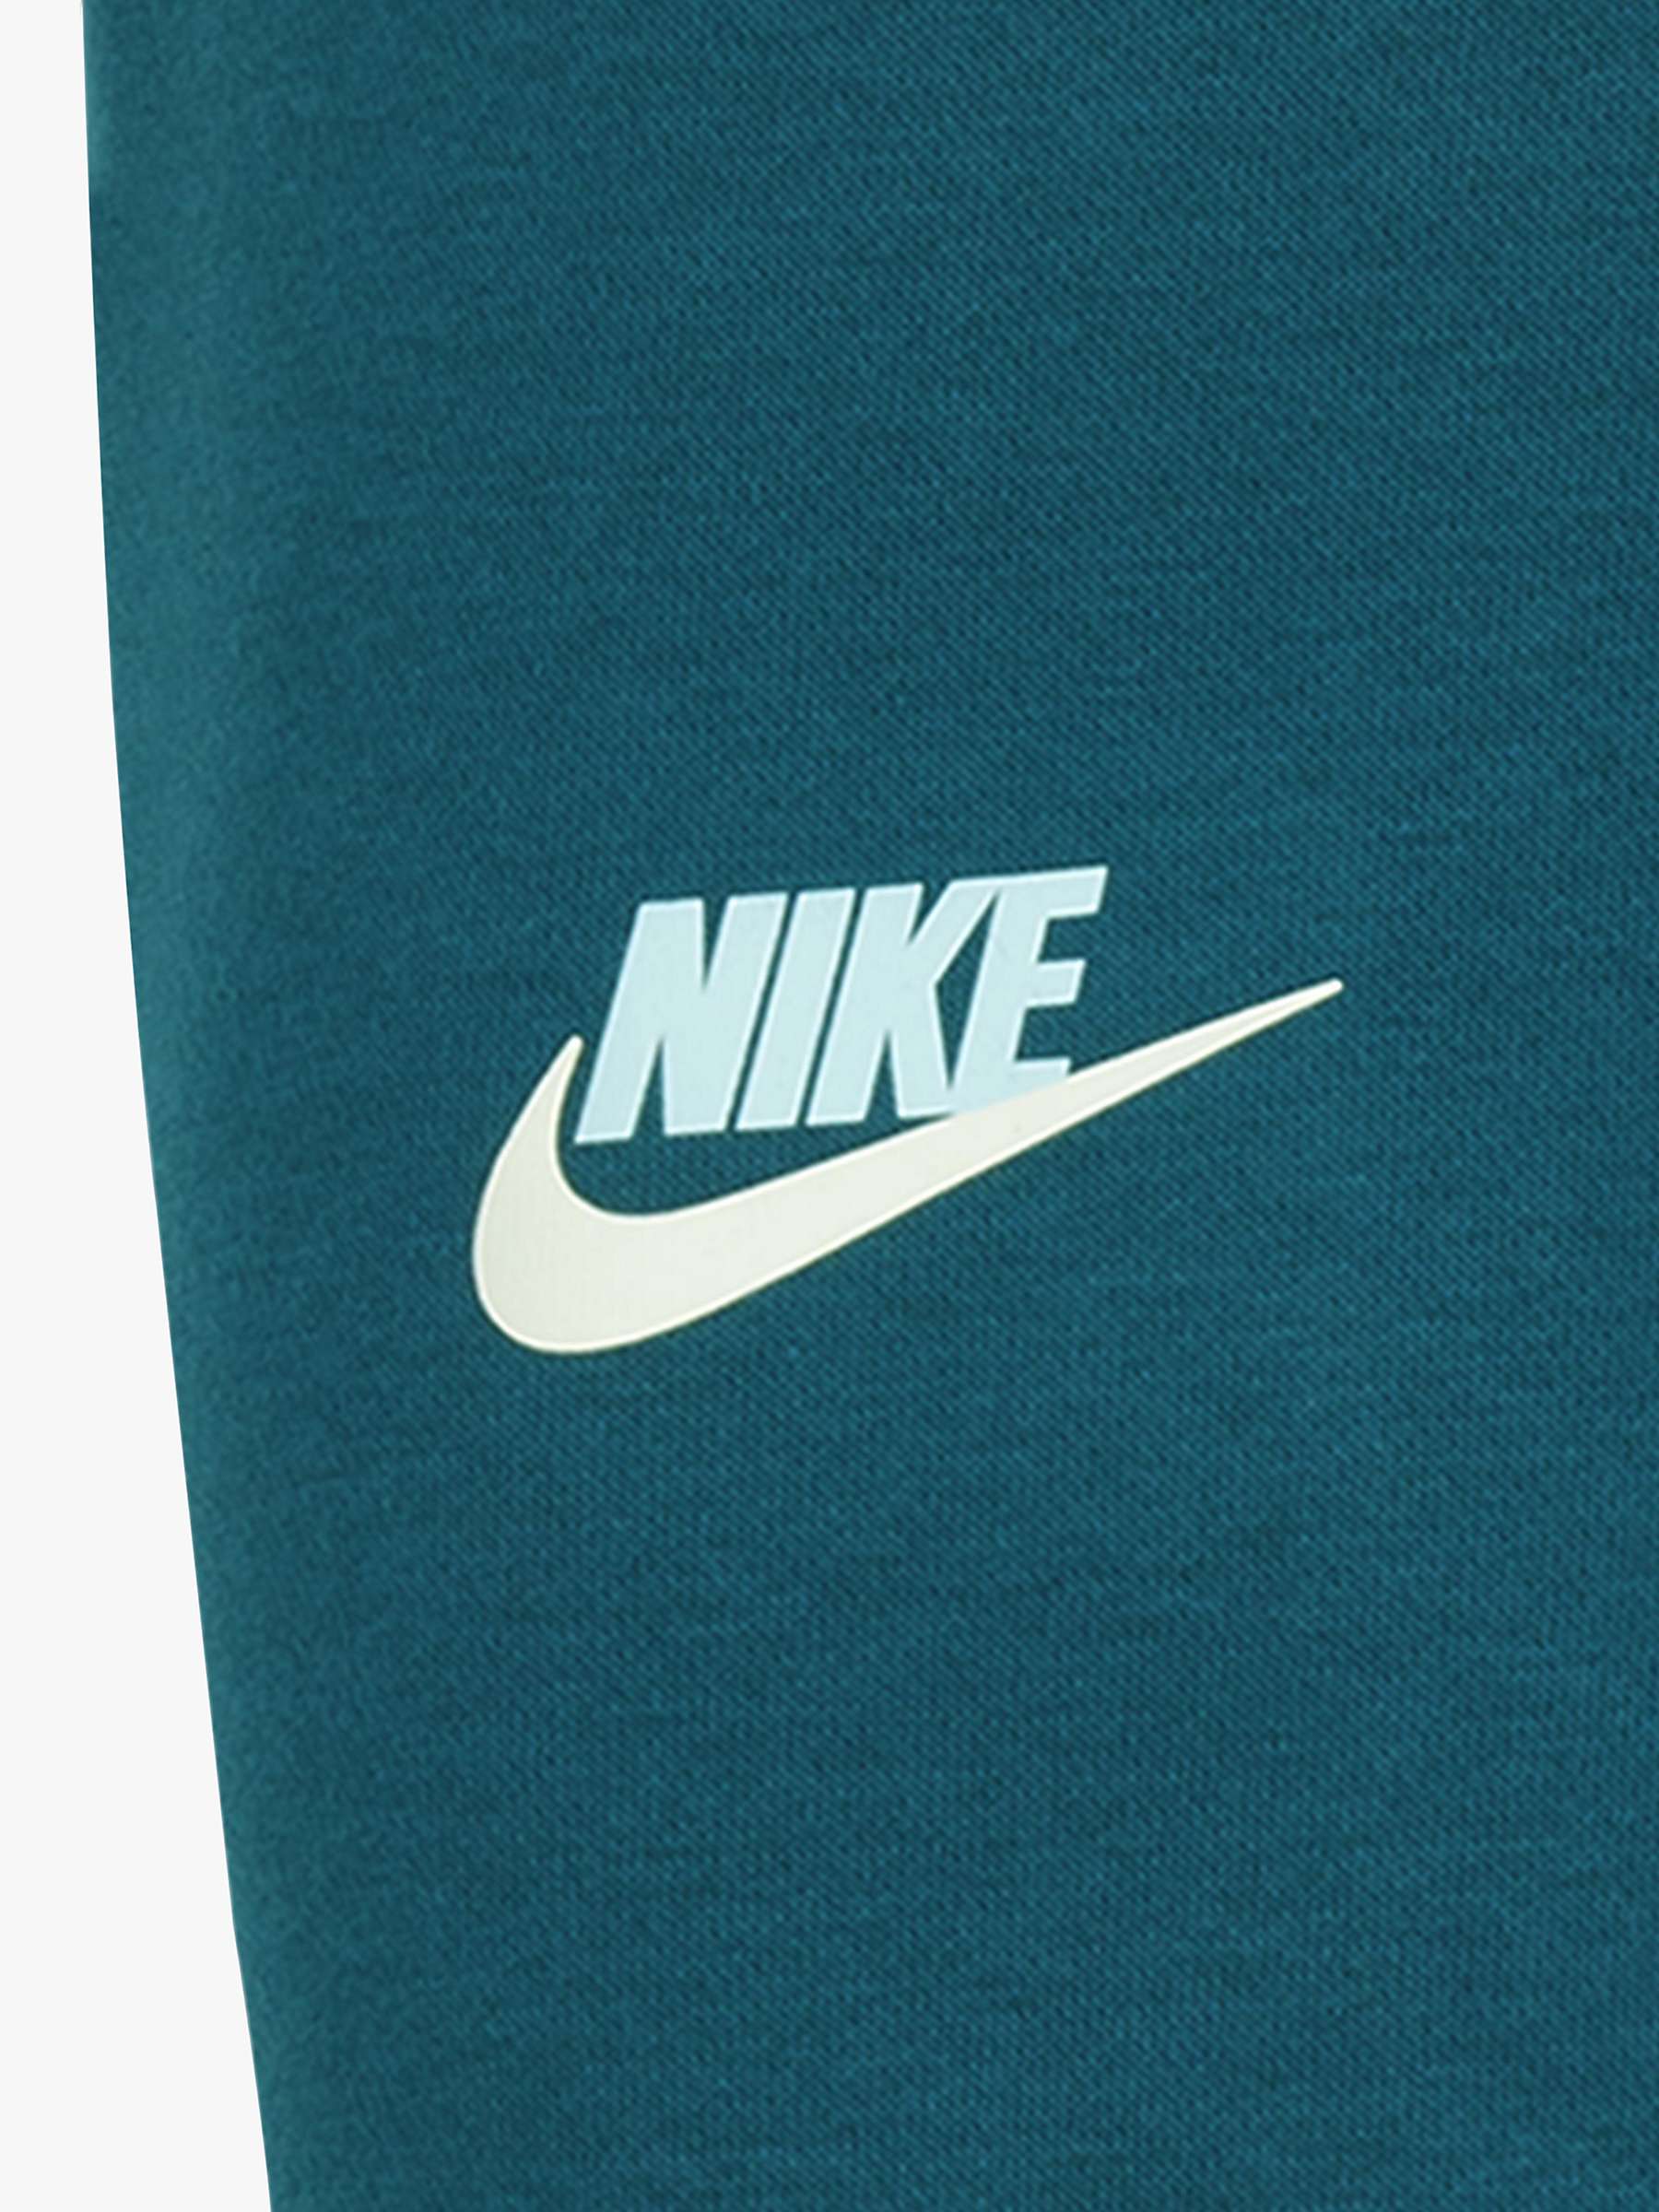 Nike Kids' Graphic T-Shirt & Cargo Joggers Set, Teal at John Lewis ...